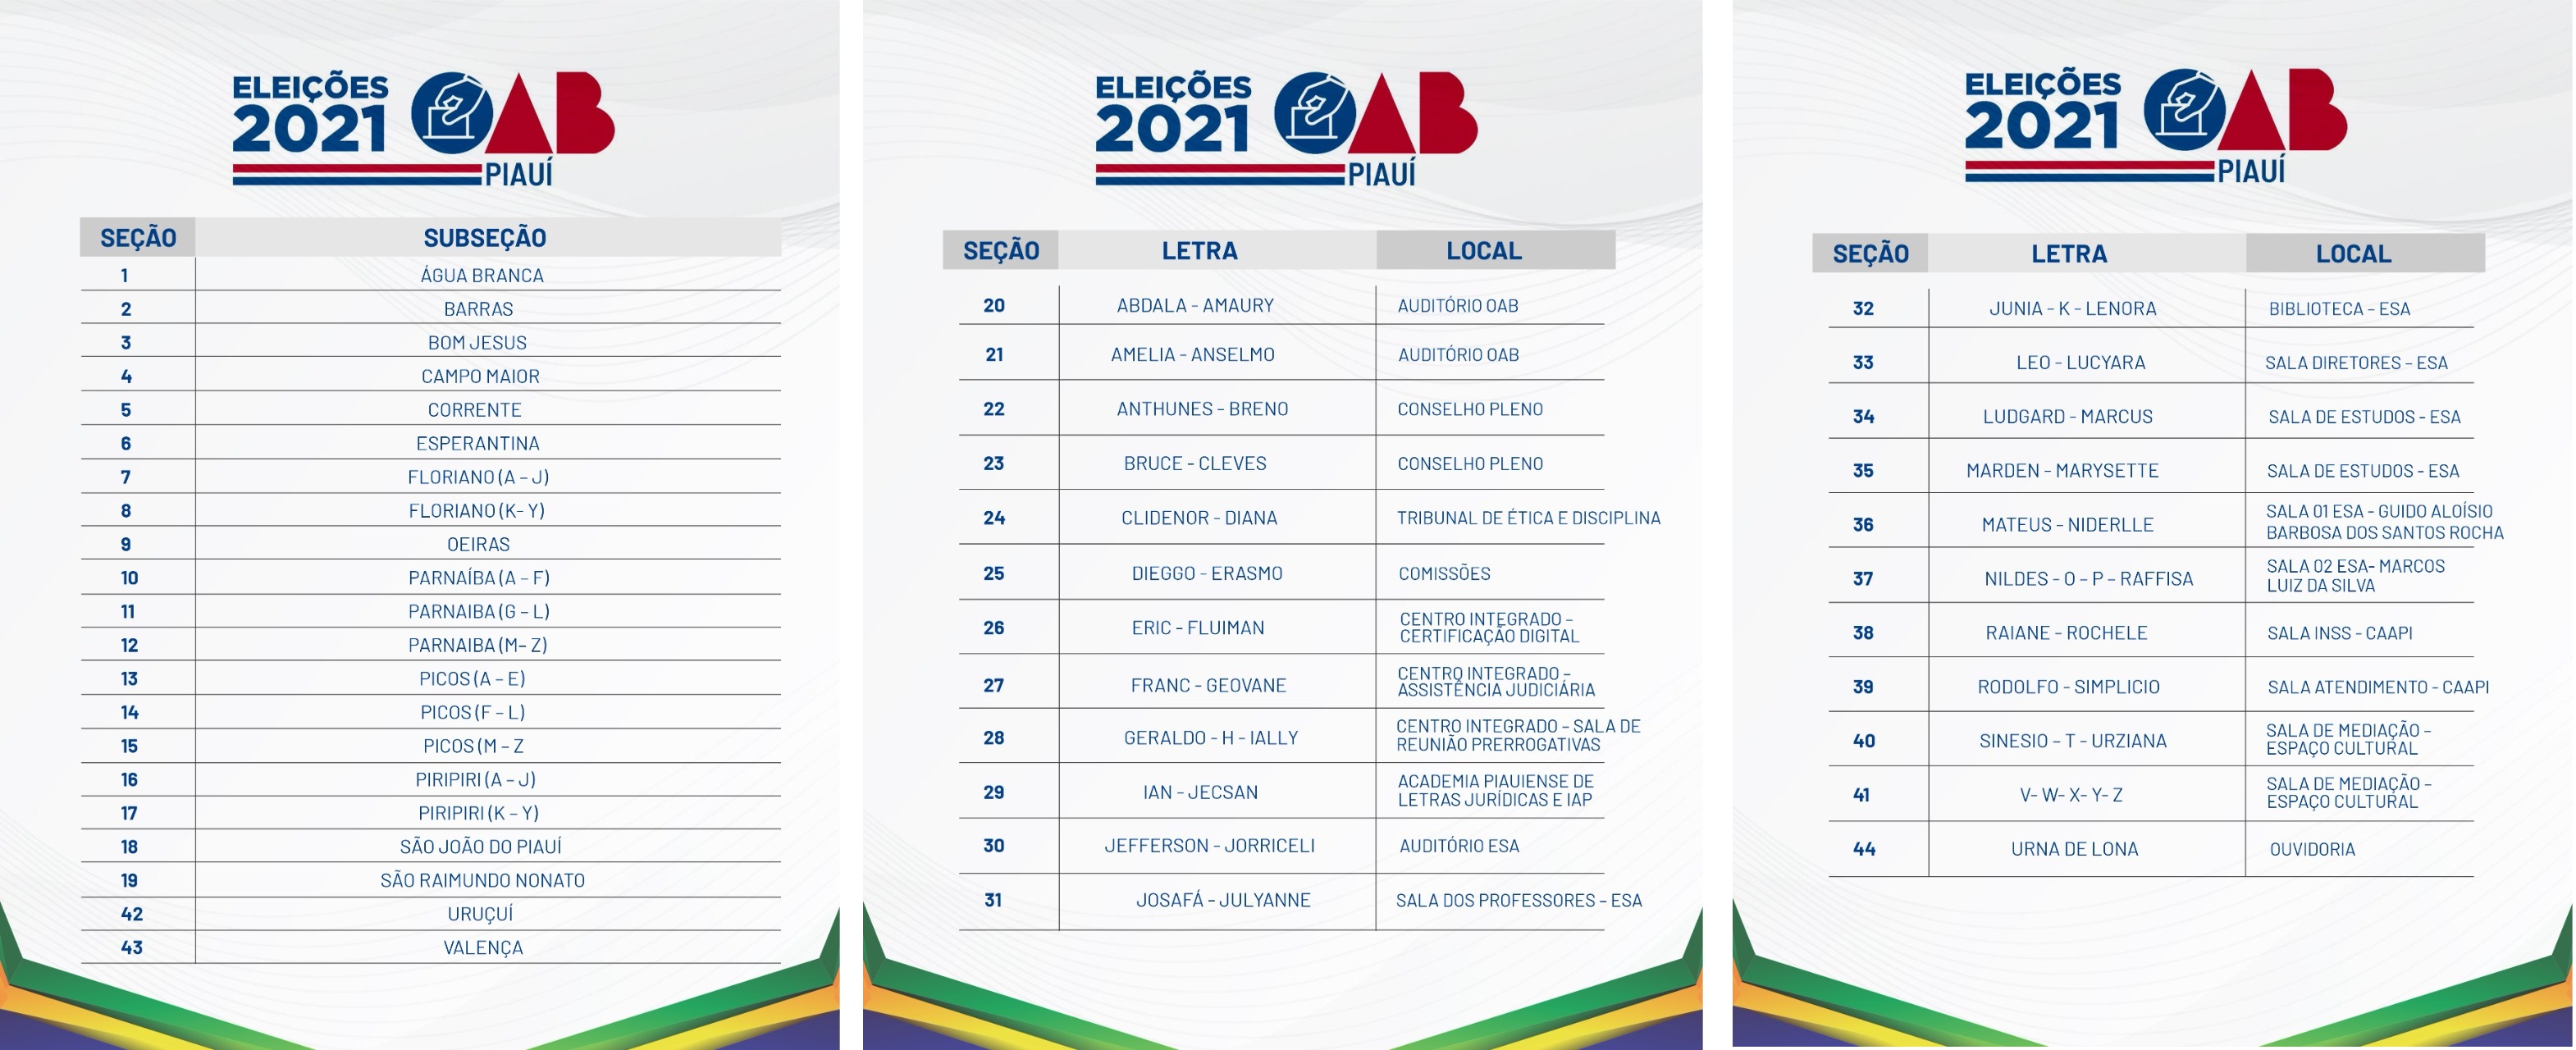 Eleições da OAB Piauí 2021